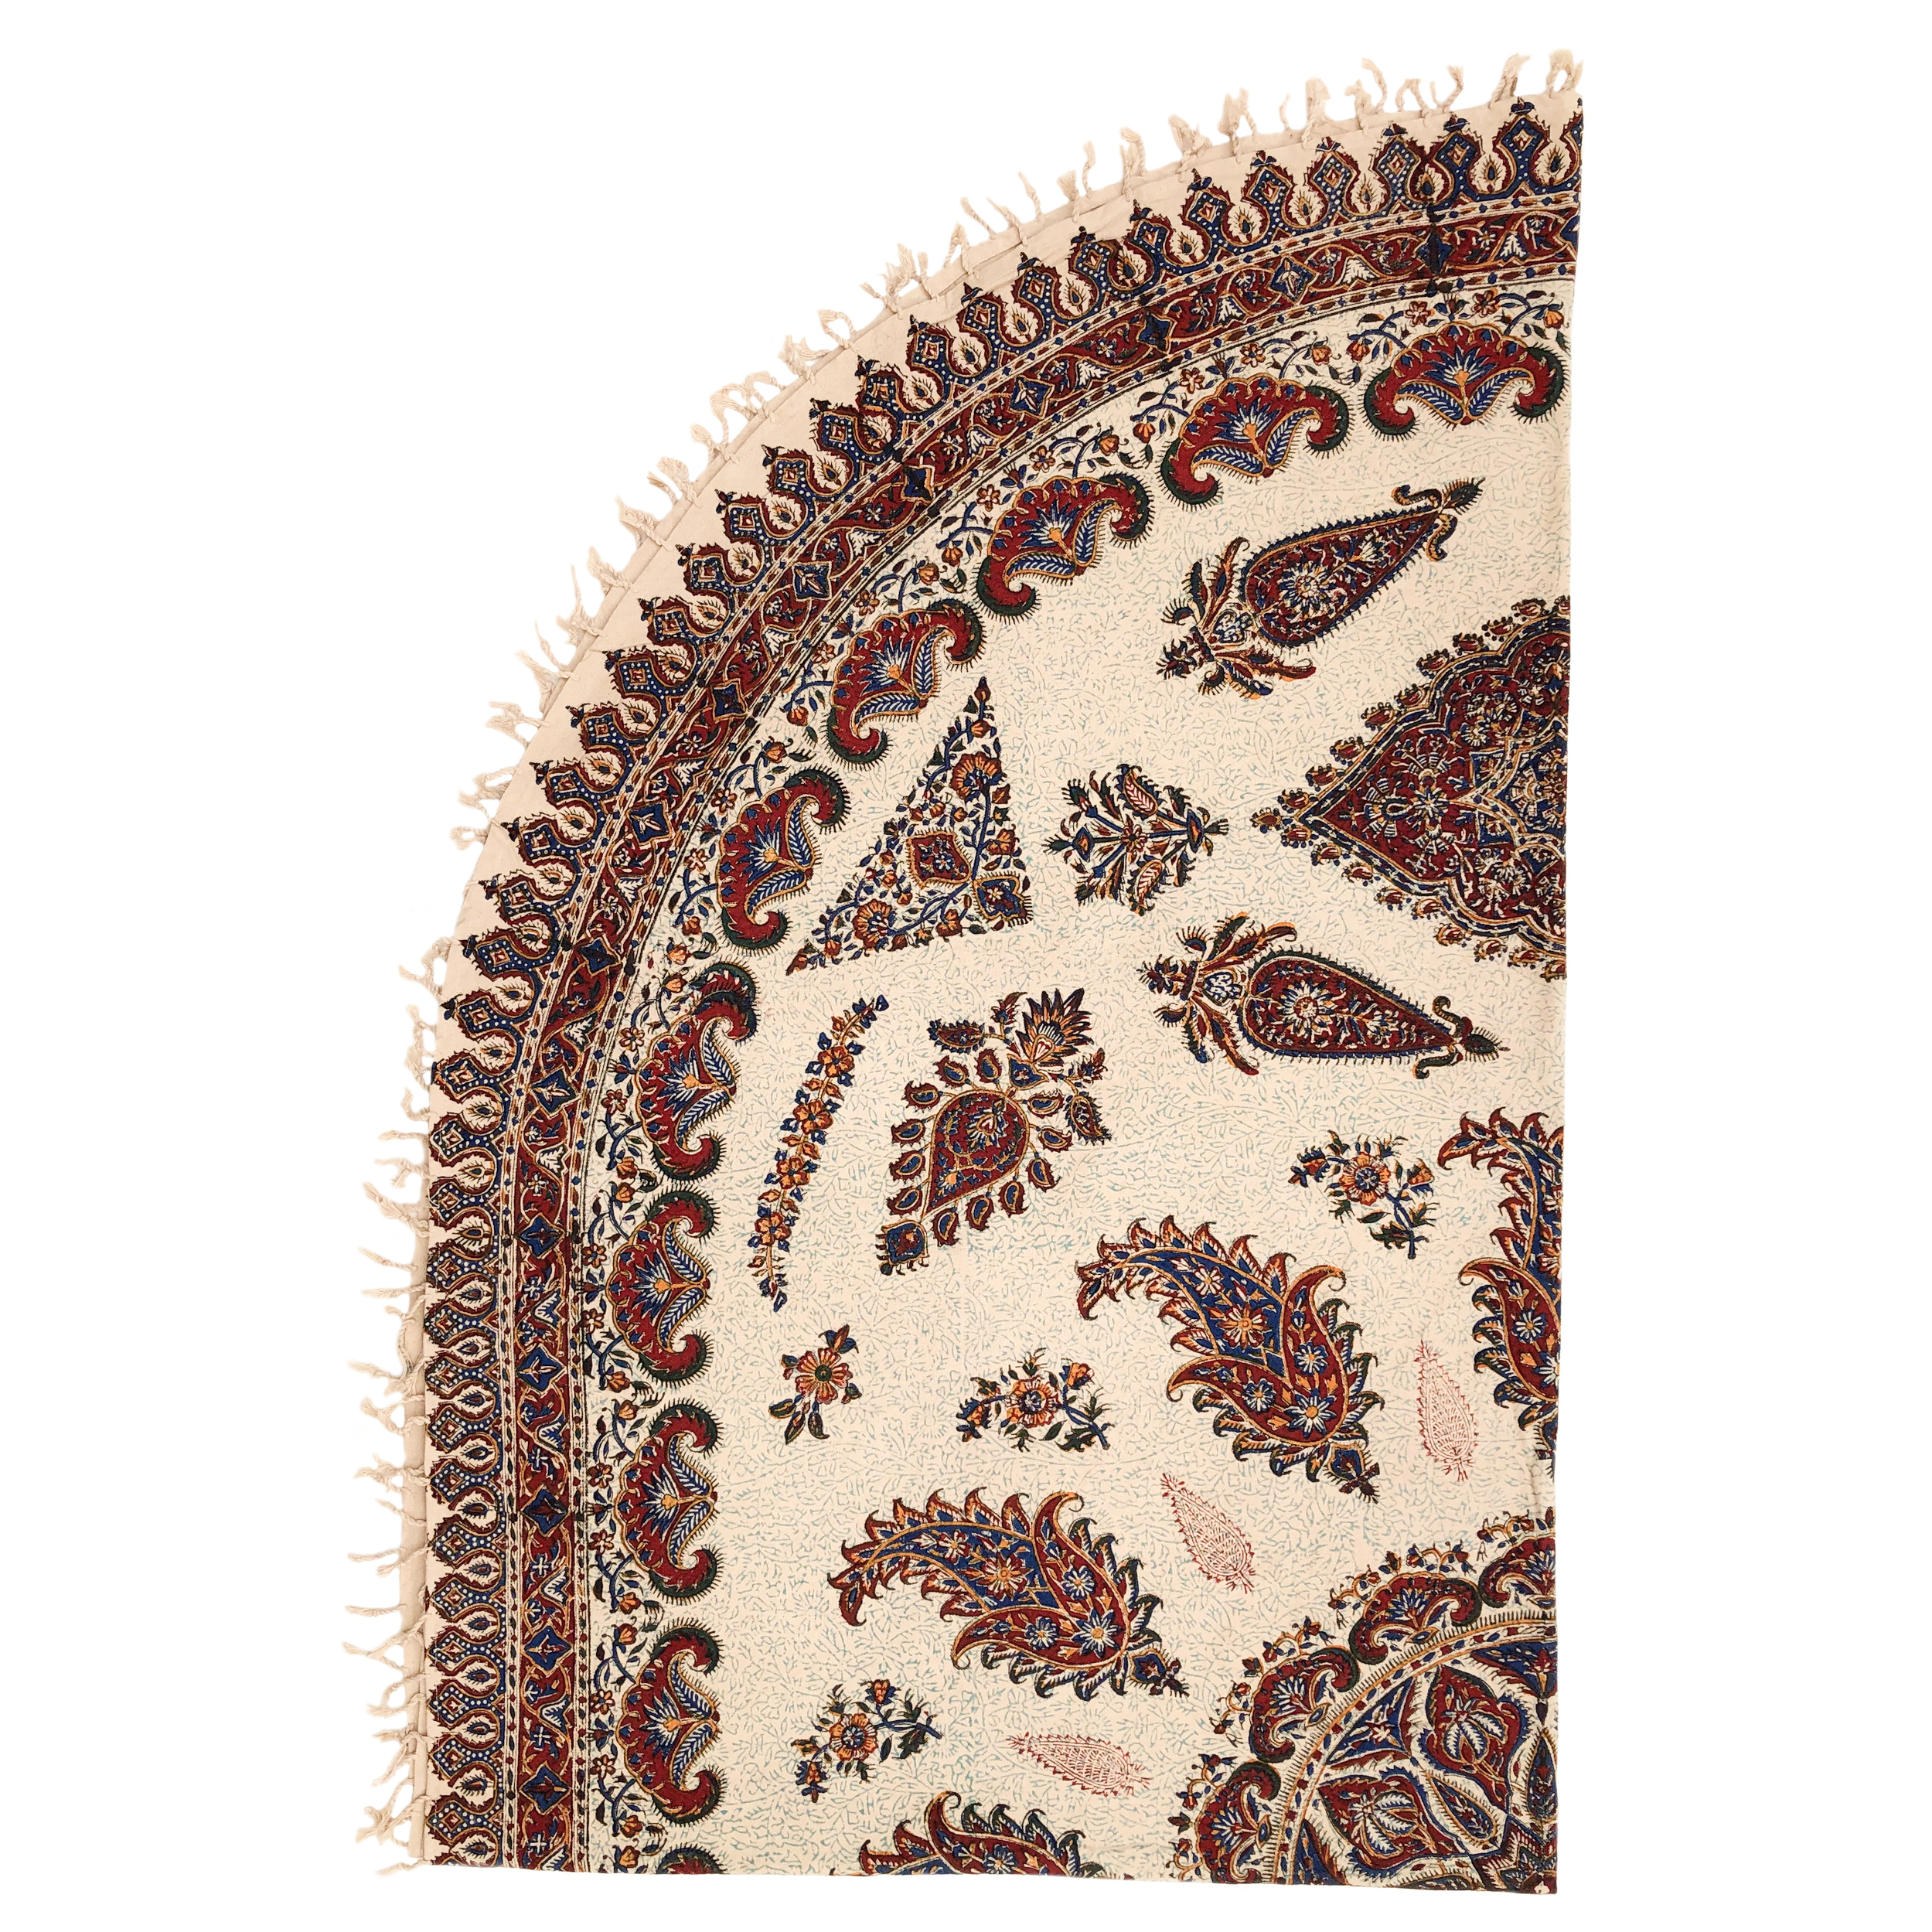 رومیزی قلمکار ممتاز اصفهان اثر عطريان طرح ترنج مدل G69سایز 240*160سانتیمتر